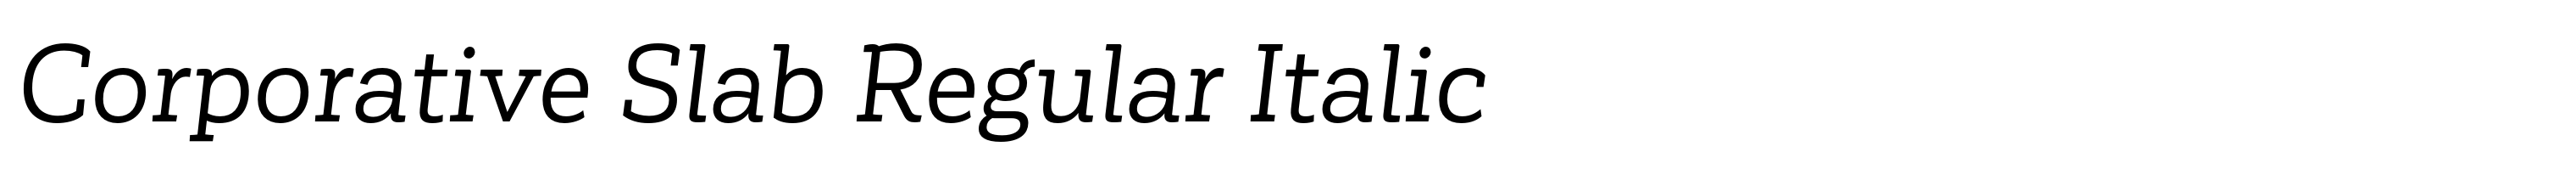 Corporative Slab Regular Italic